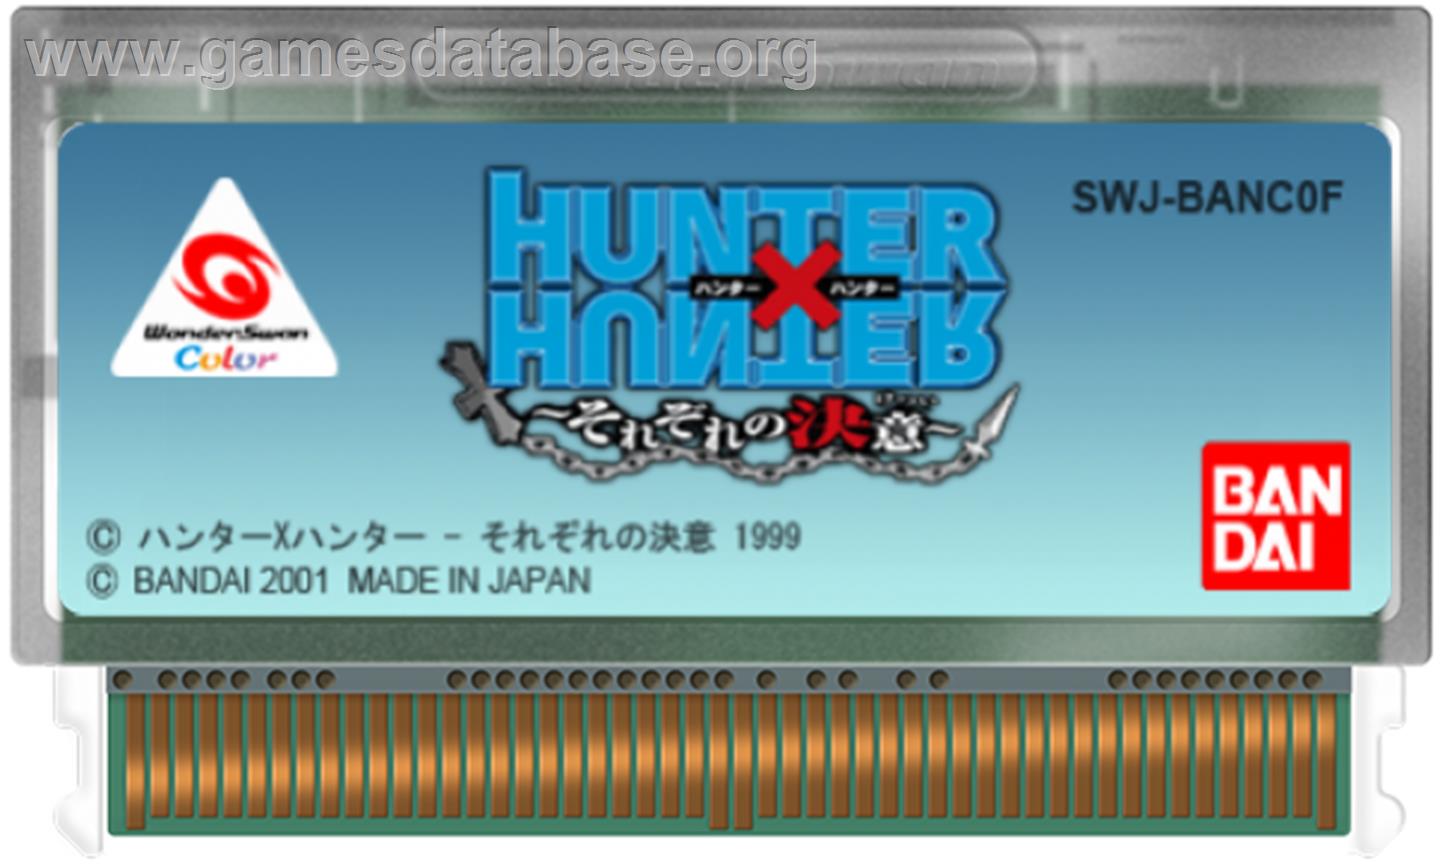 Hunter X Hunter: Sorezore no Ketsui - Bandai WonderSwan Color - Artwork - Cartridge